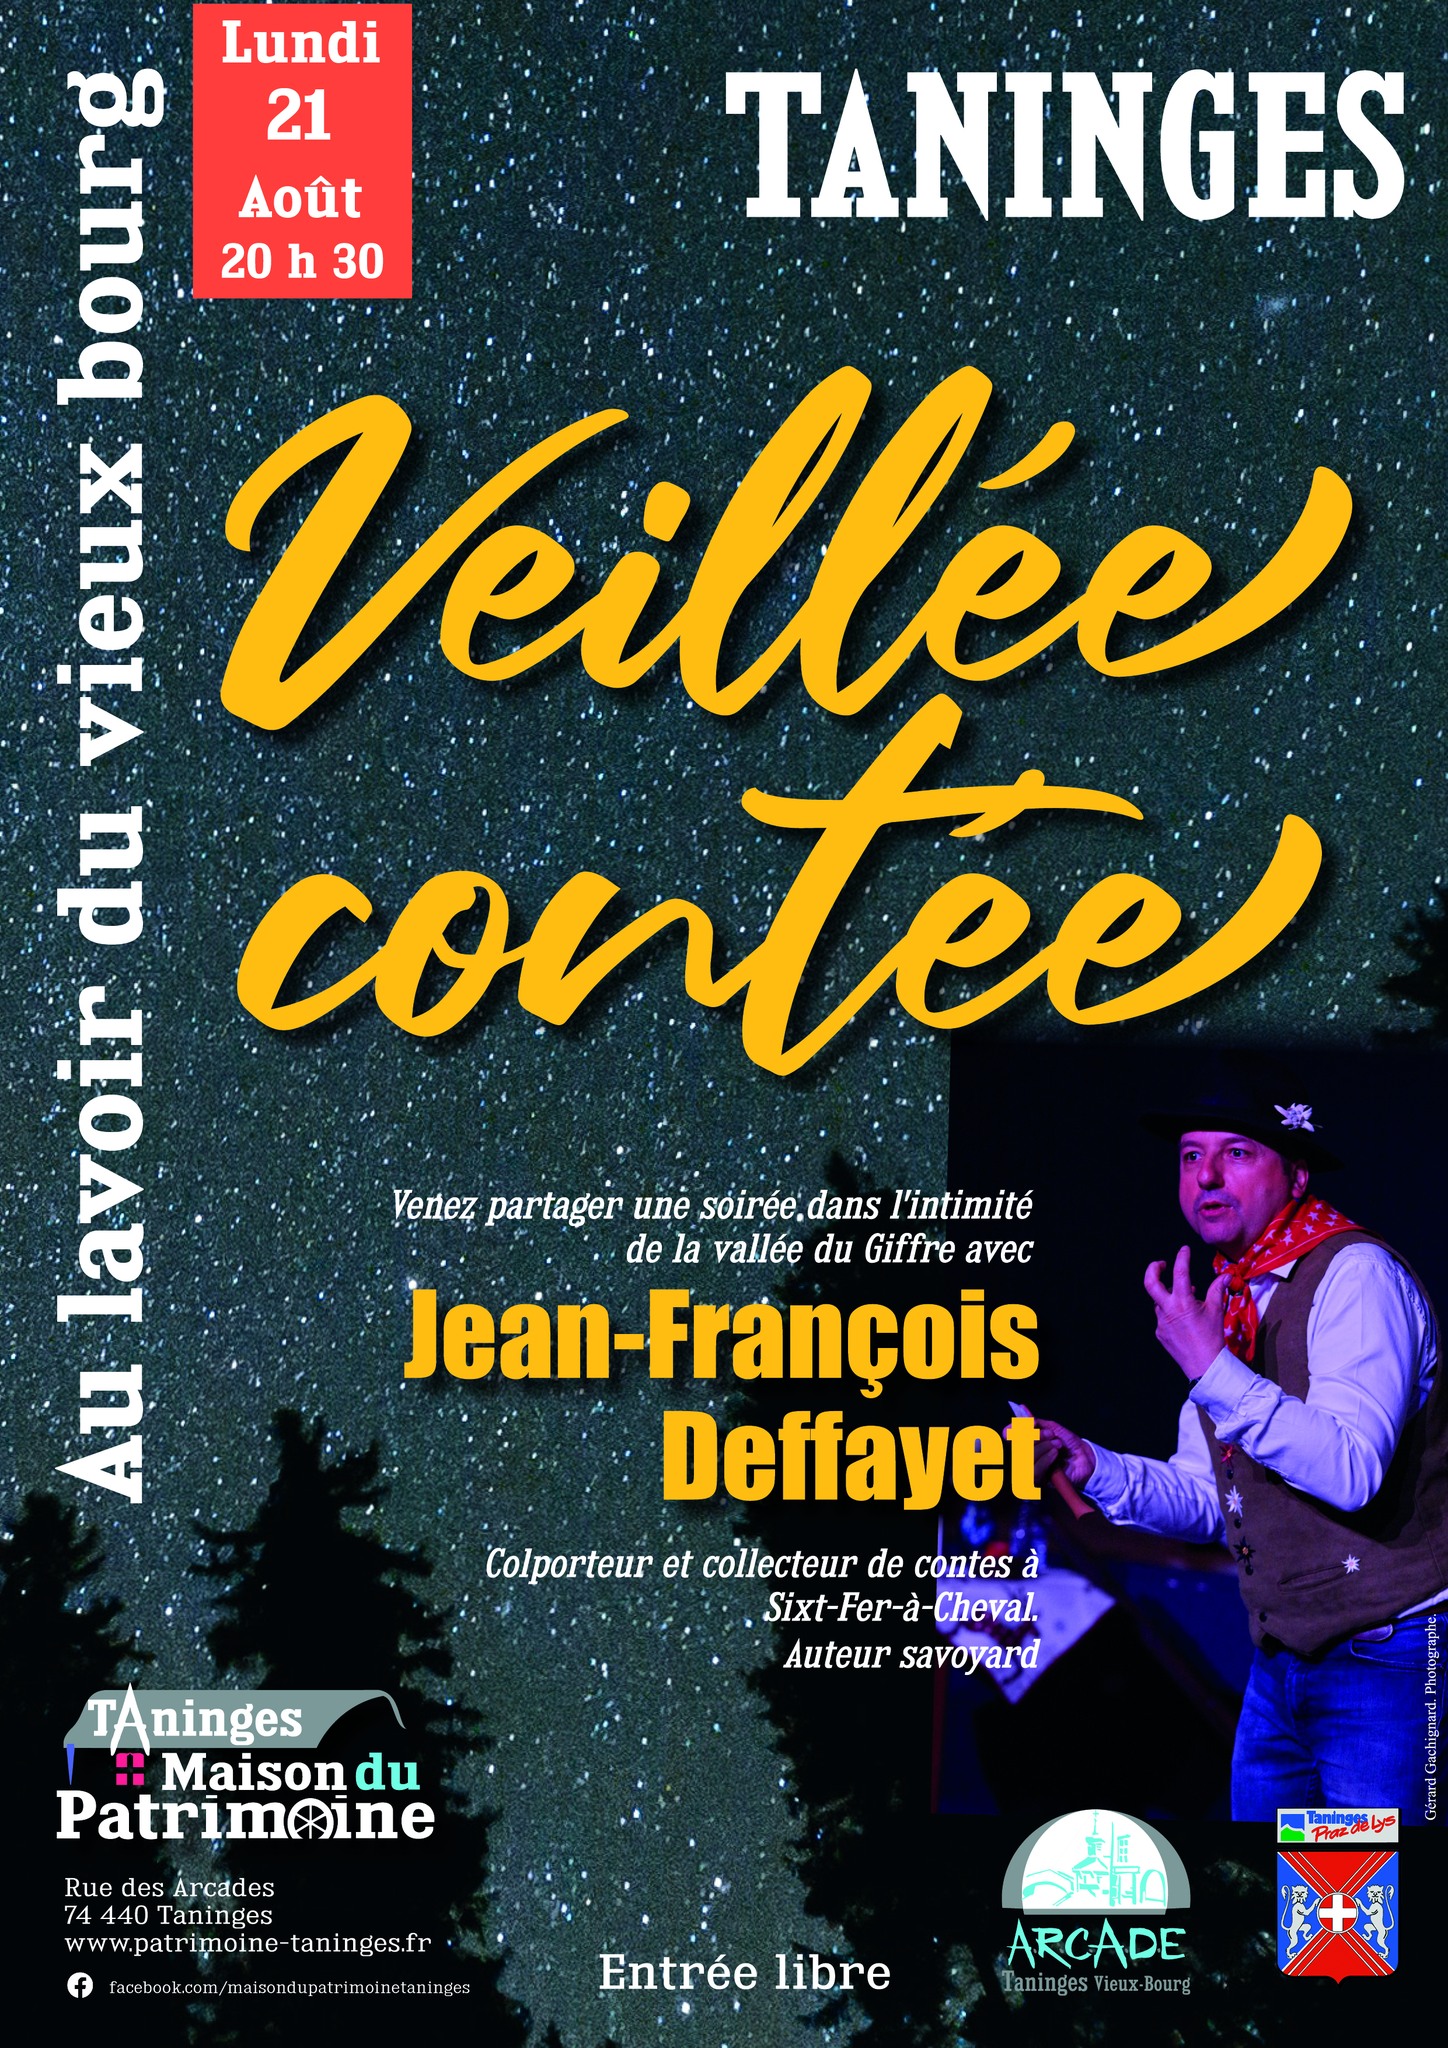 Veillée contée avec Jean Francois Deffayet